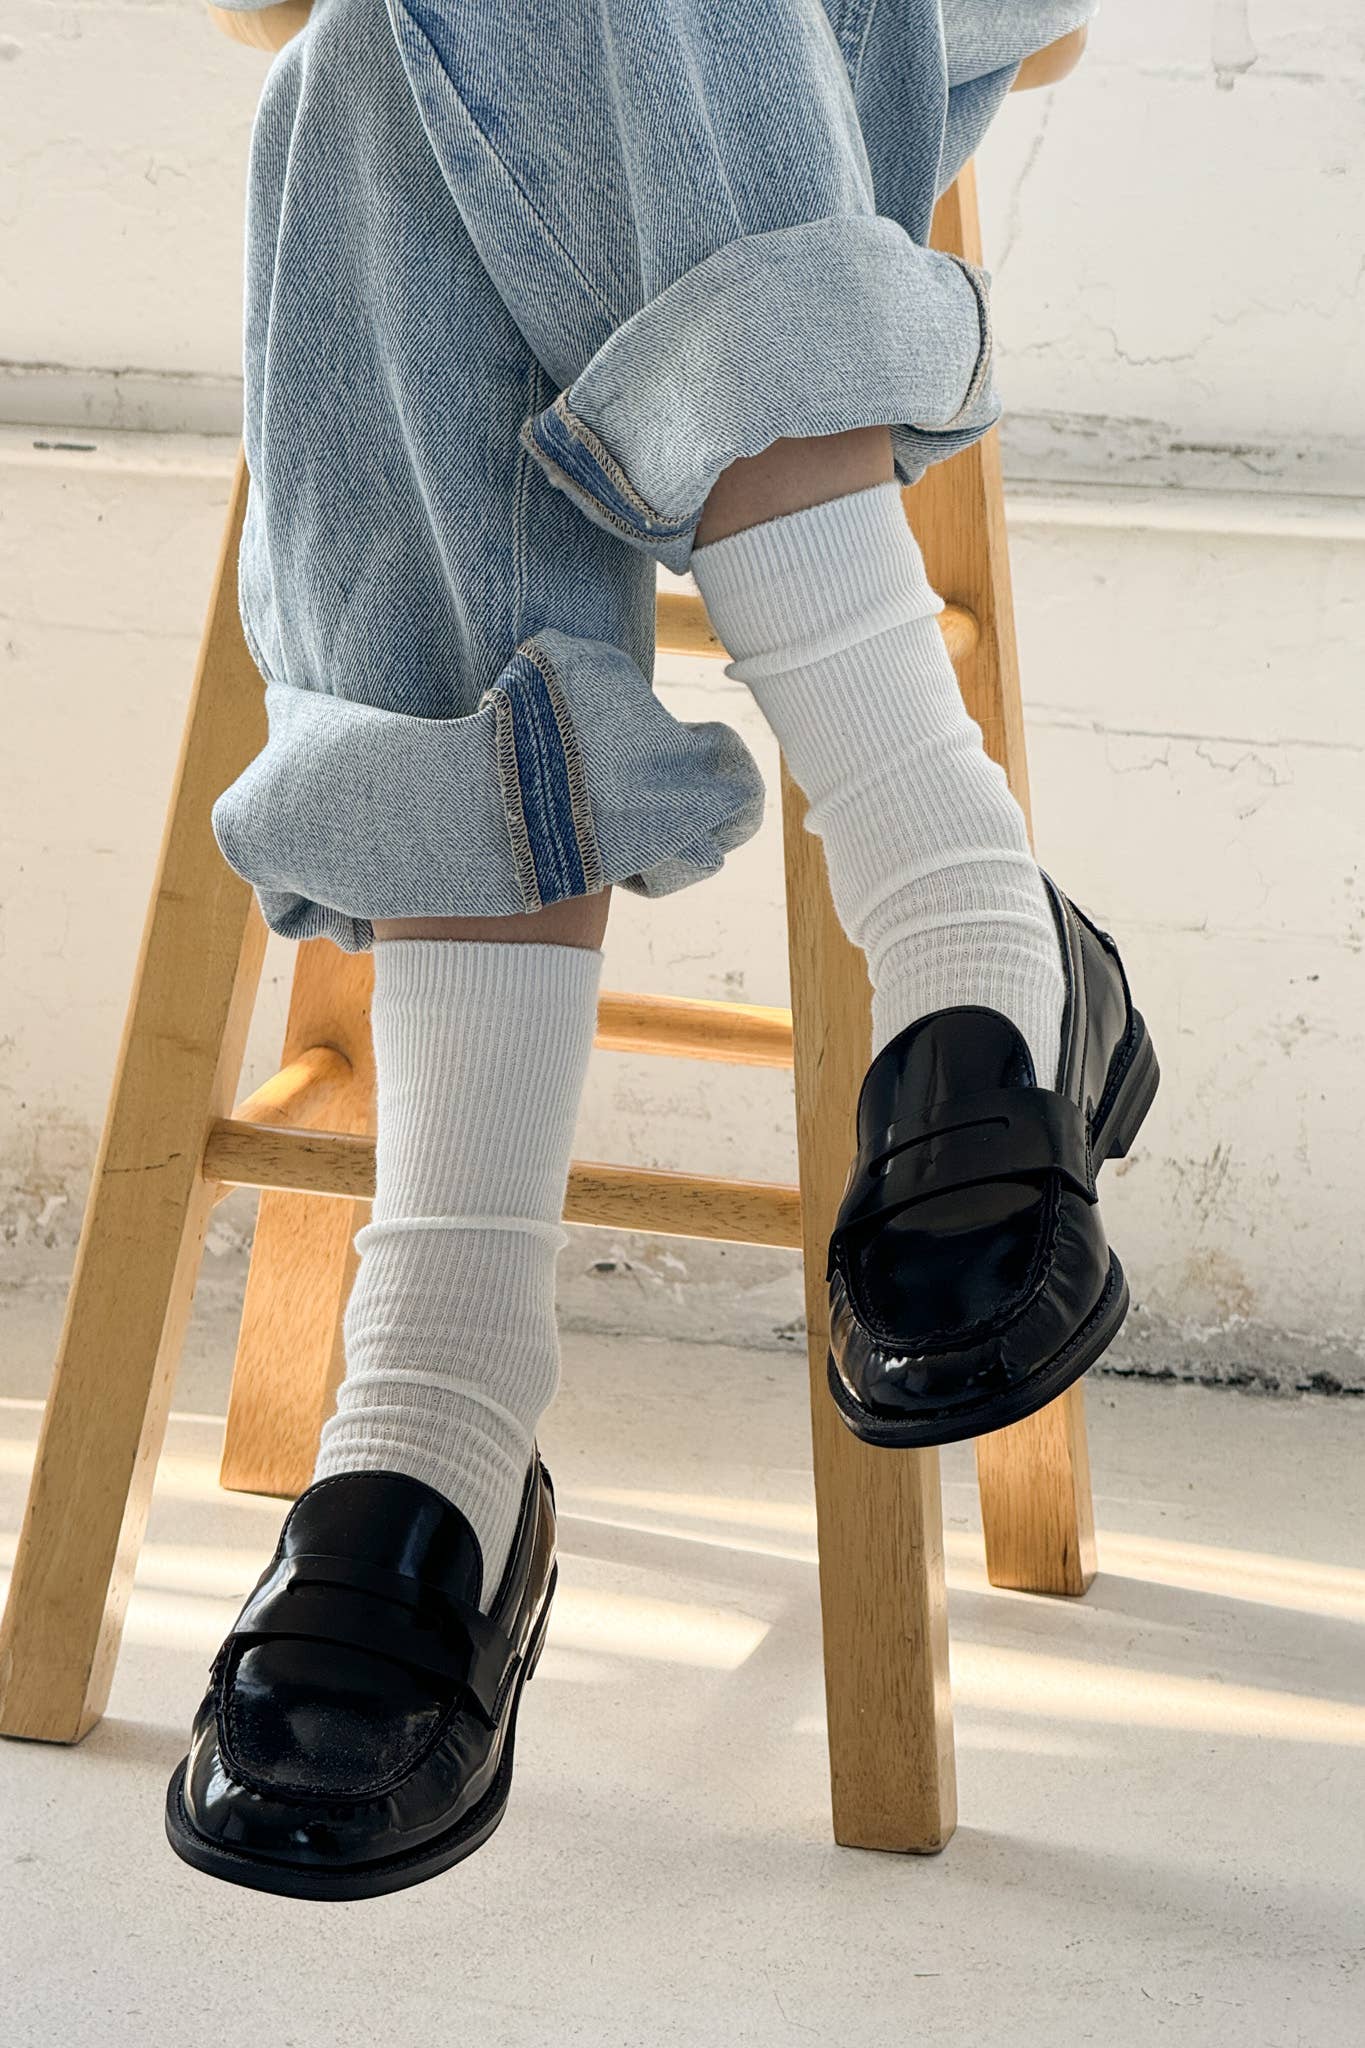 Le Bon Shoppe Trouser Socks - OS